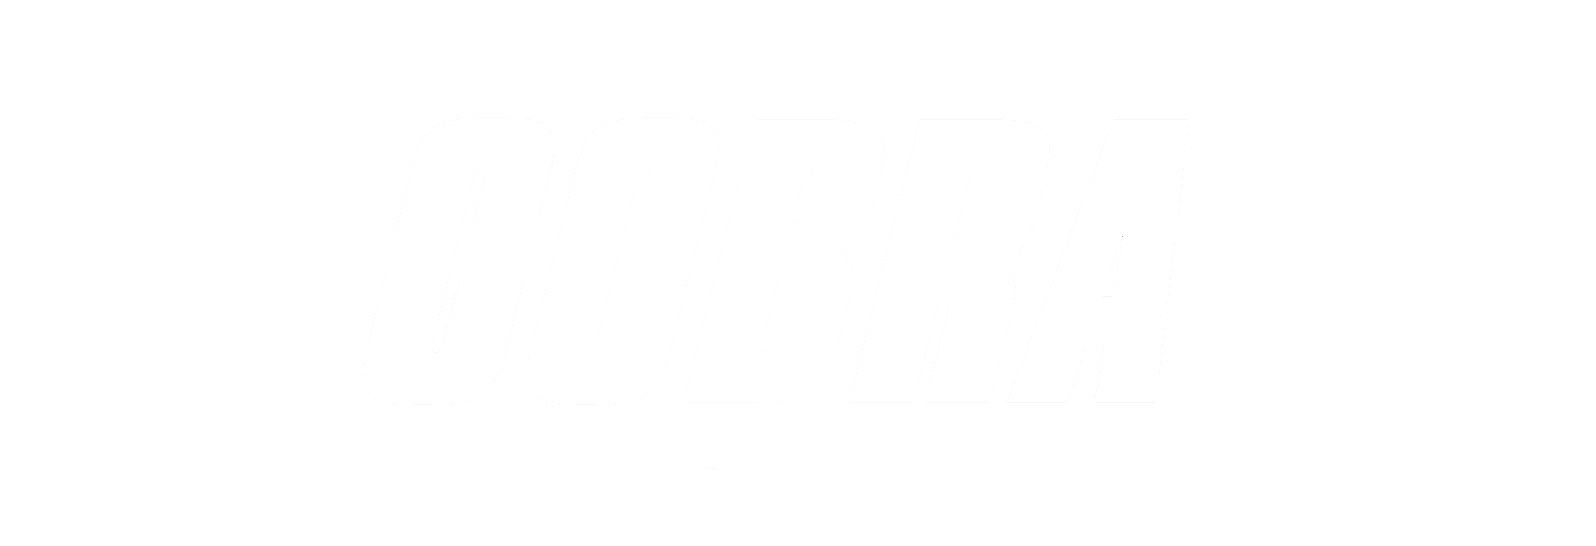 cobra-suspentions